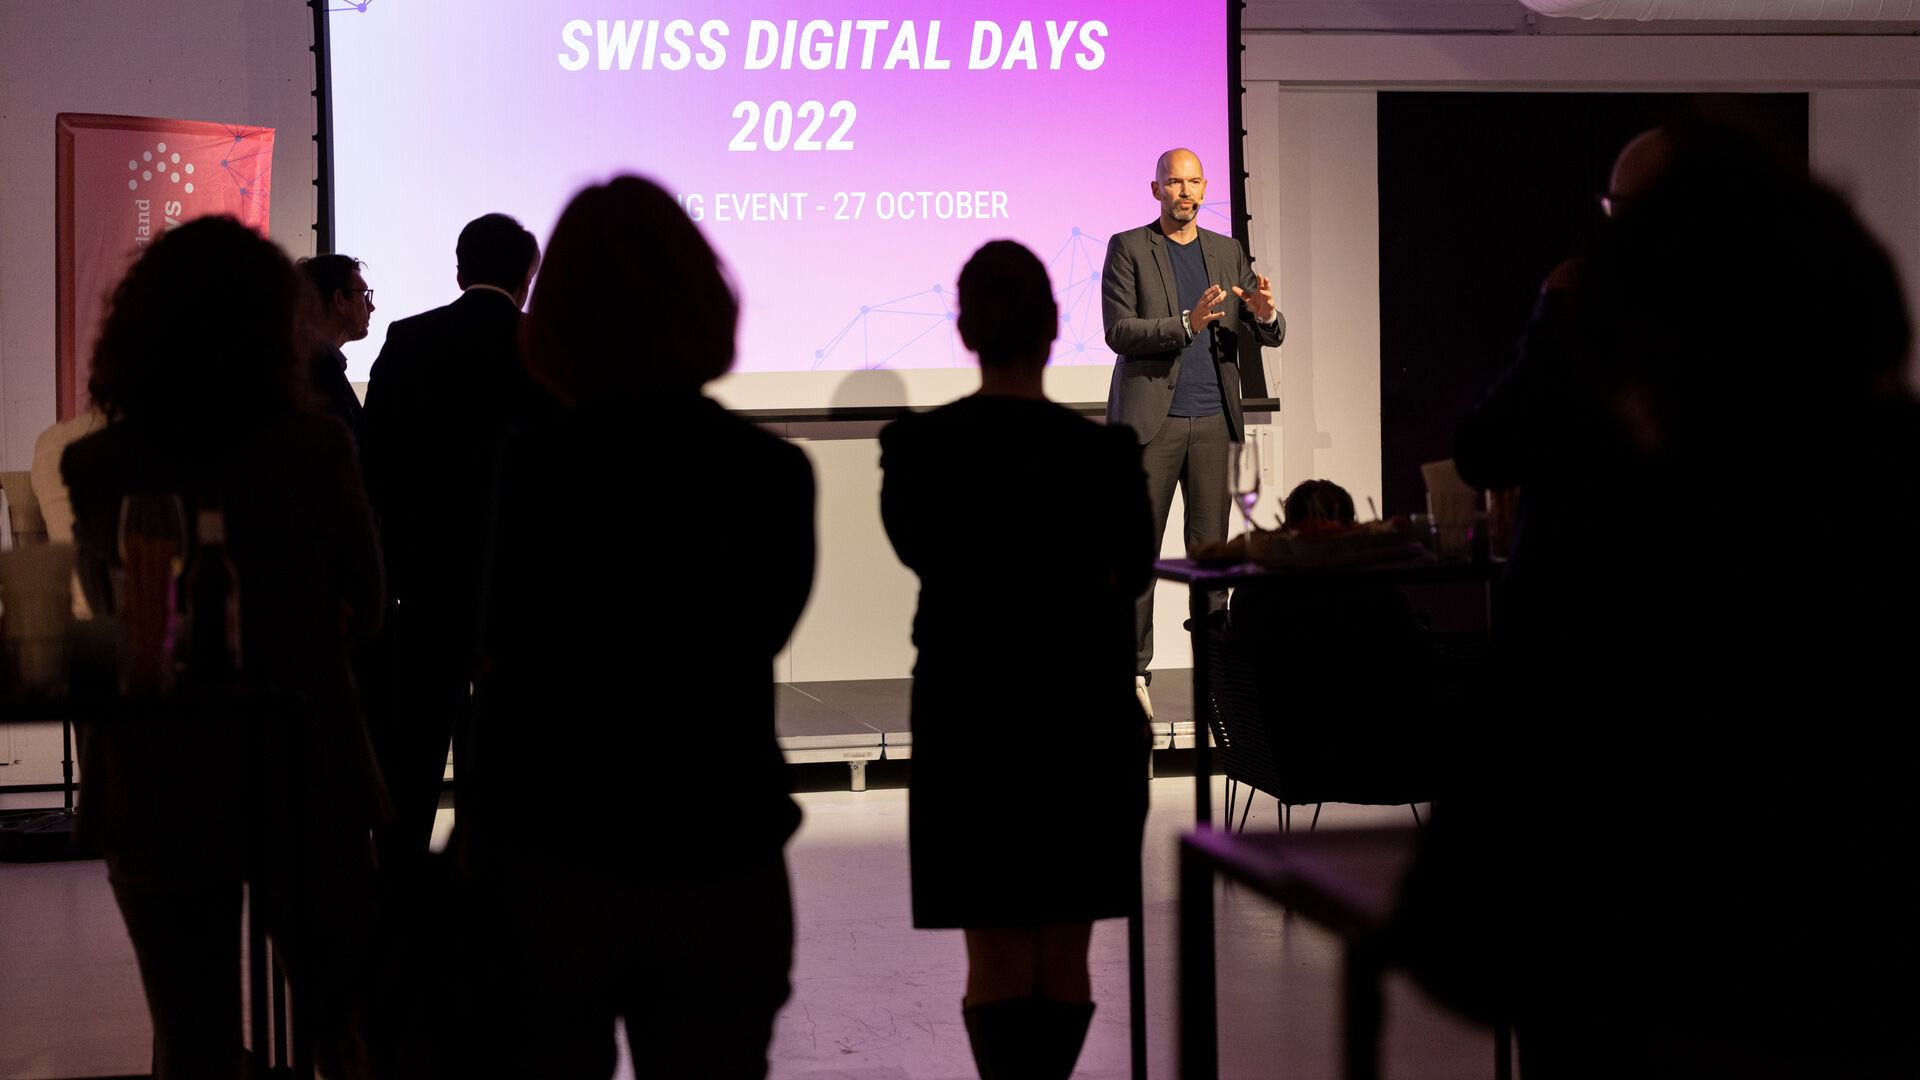 Swiss Digital Days: det avslutande evenemanget för "Swiss Digital Days" 2022 på Freiruum i Zug (Zug) den 27 oktober